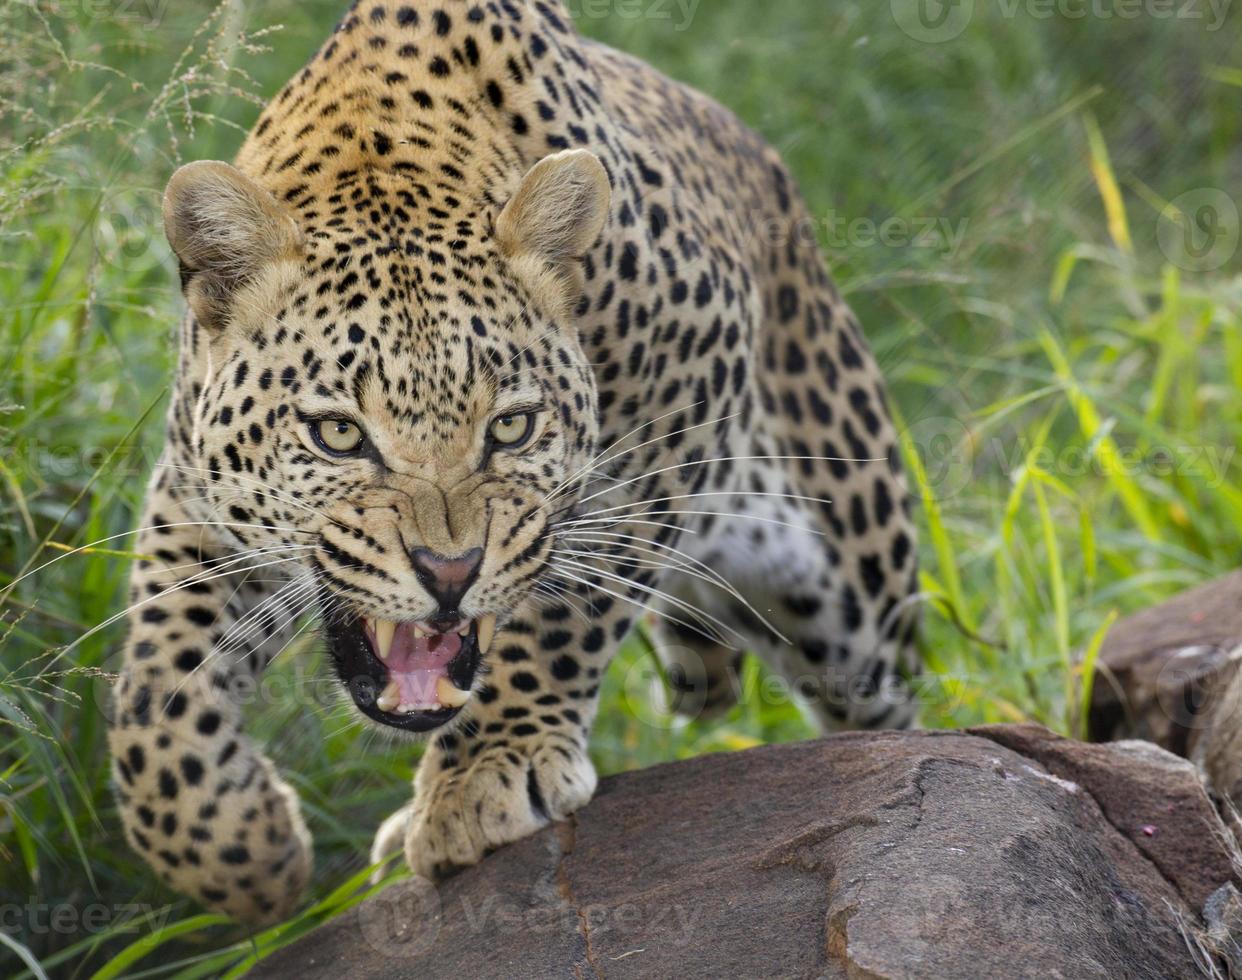 leopardo africano, gruñendo, sudáfrica foto